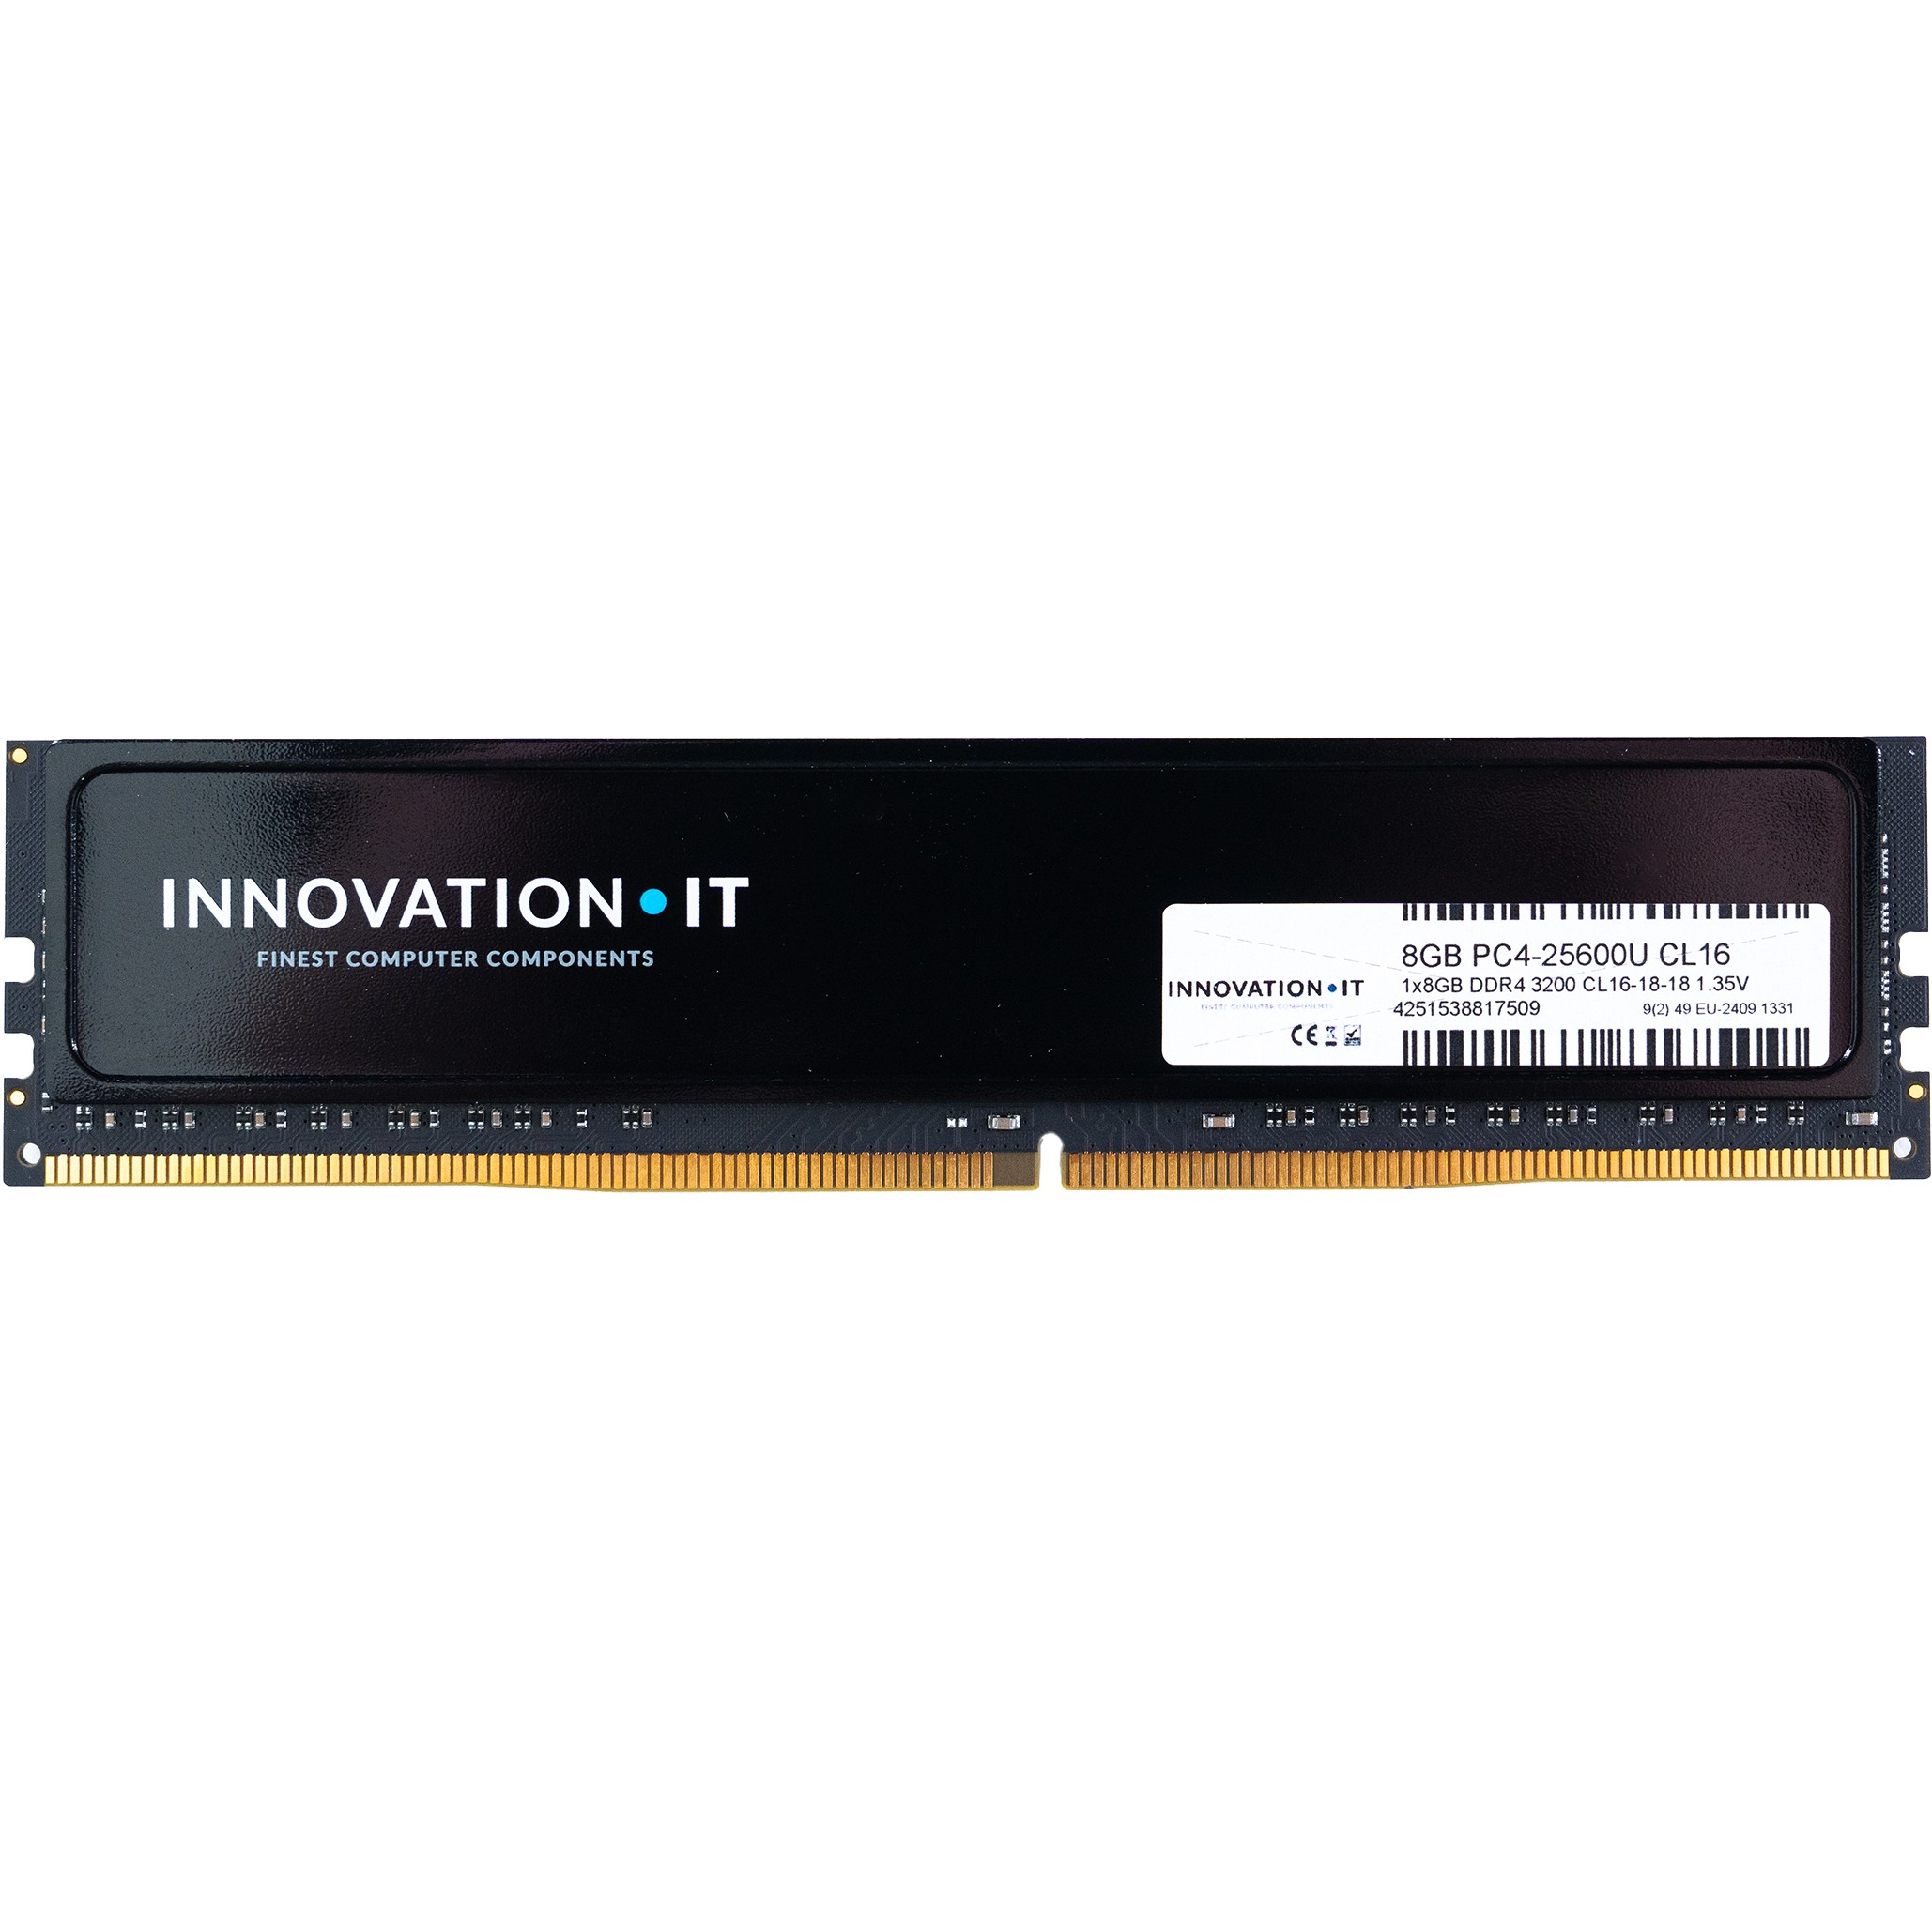 3200 8GB Innovation IT CL16 1.35V with Heatspreader (CL16-18-18) - 4251538817509